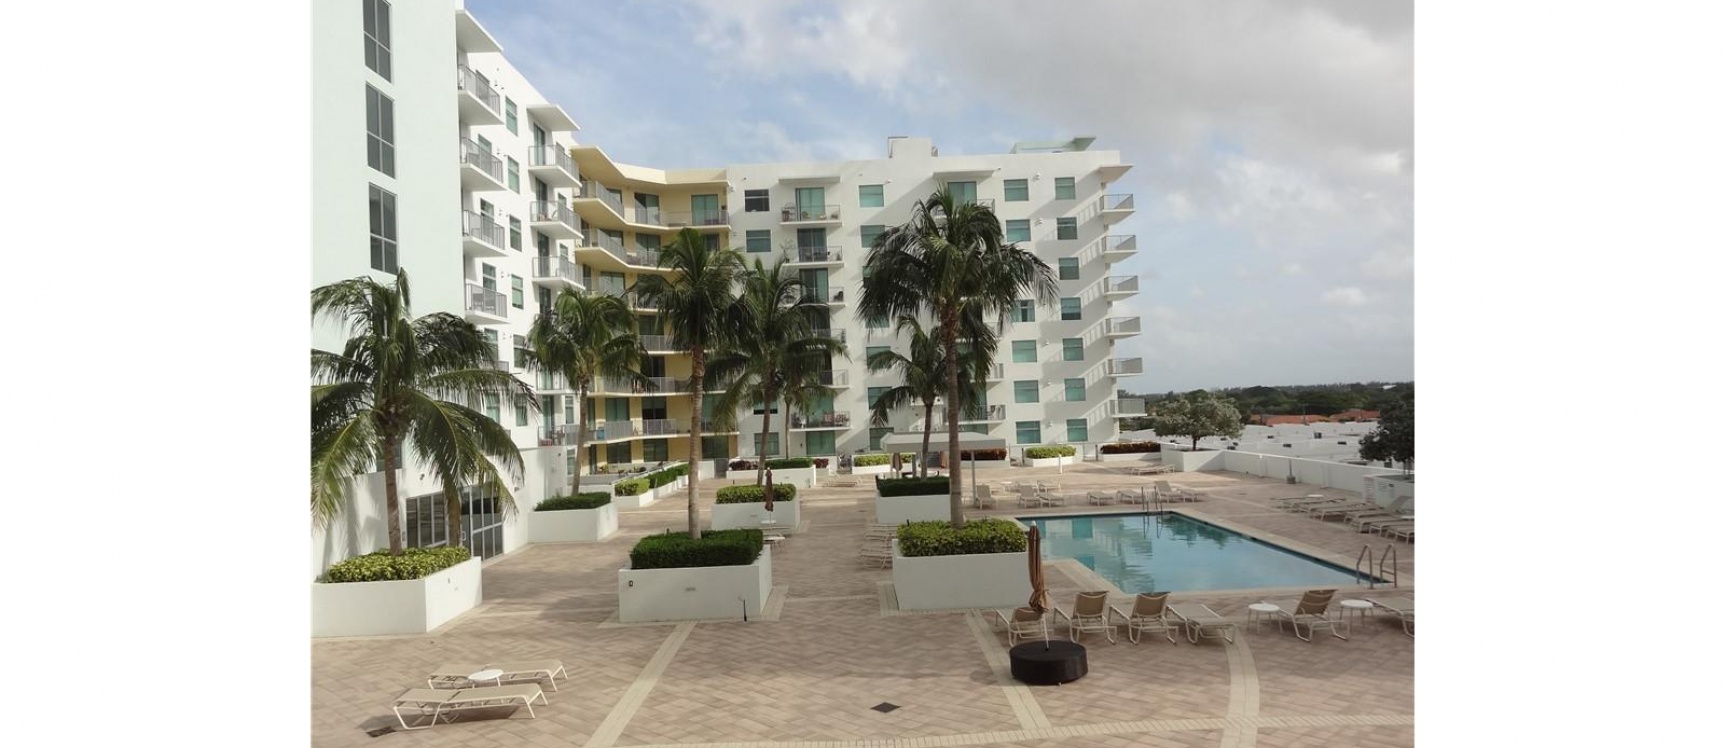 GeoBienes - Departamento de venta en Miami, Hollywood Station - Plusvalia Guayaquil Casas de venta y alquiler Inmobiliaria Ecuador